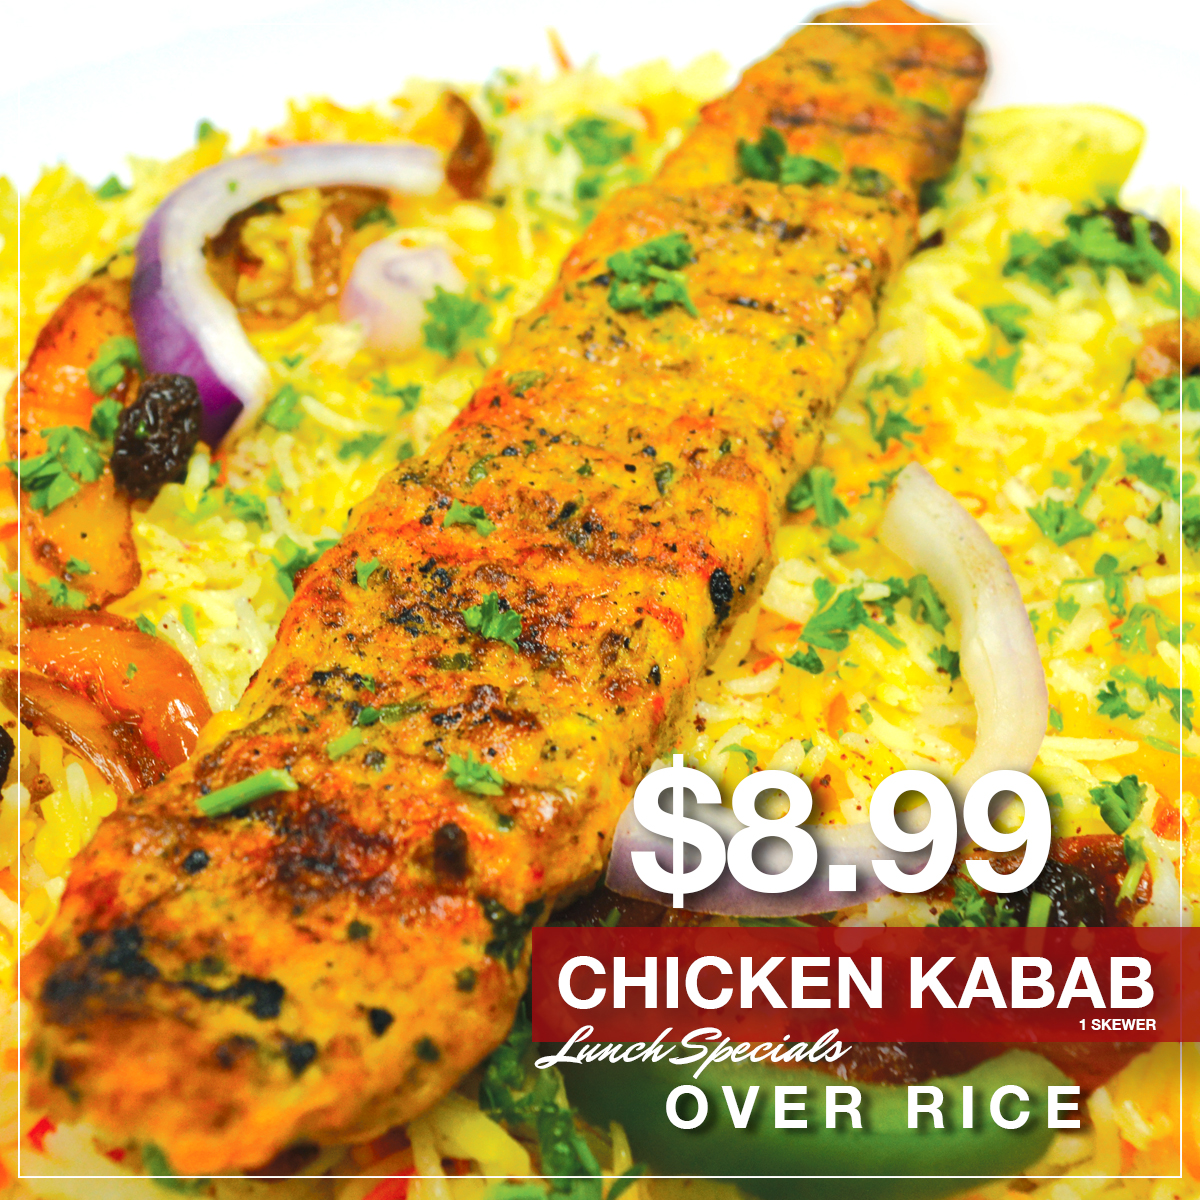 CHICKEN KABAB Lunch specials-22